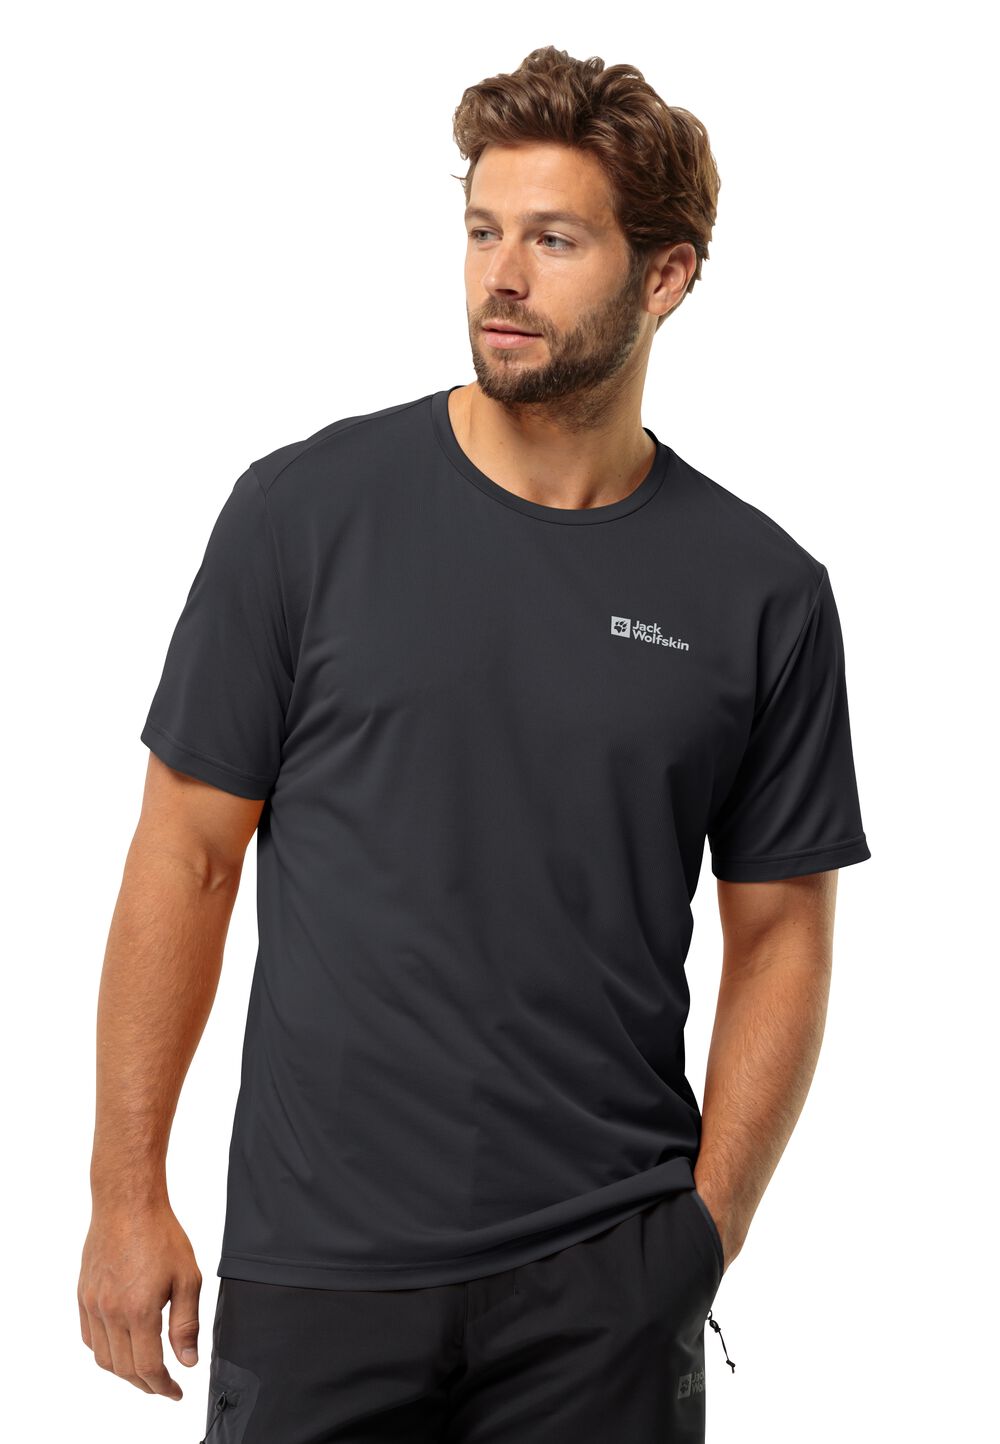 Jack Wolfskin Delgami S S Men Functioneel shirt Heren XL zwart black